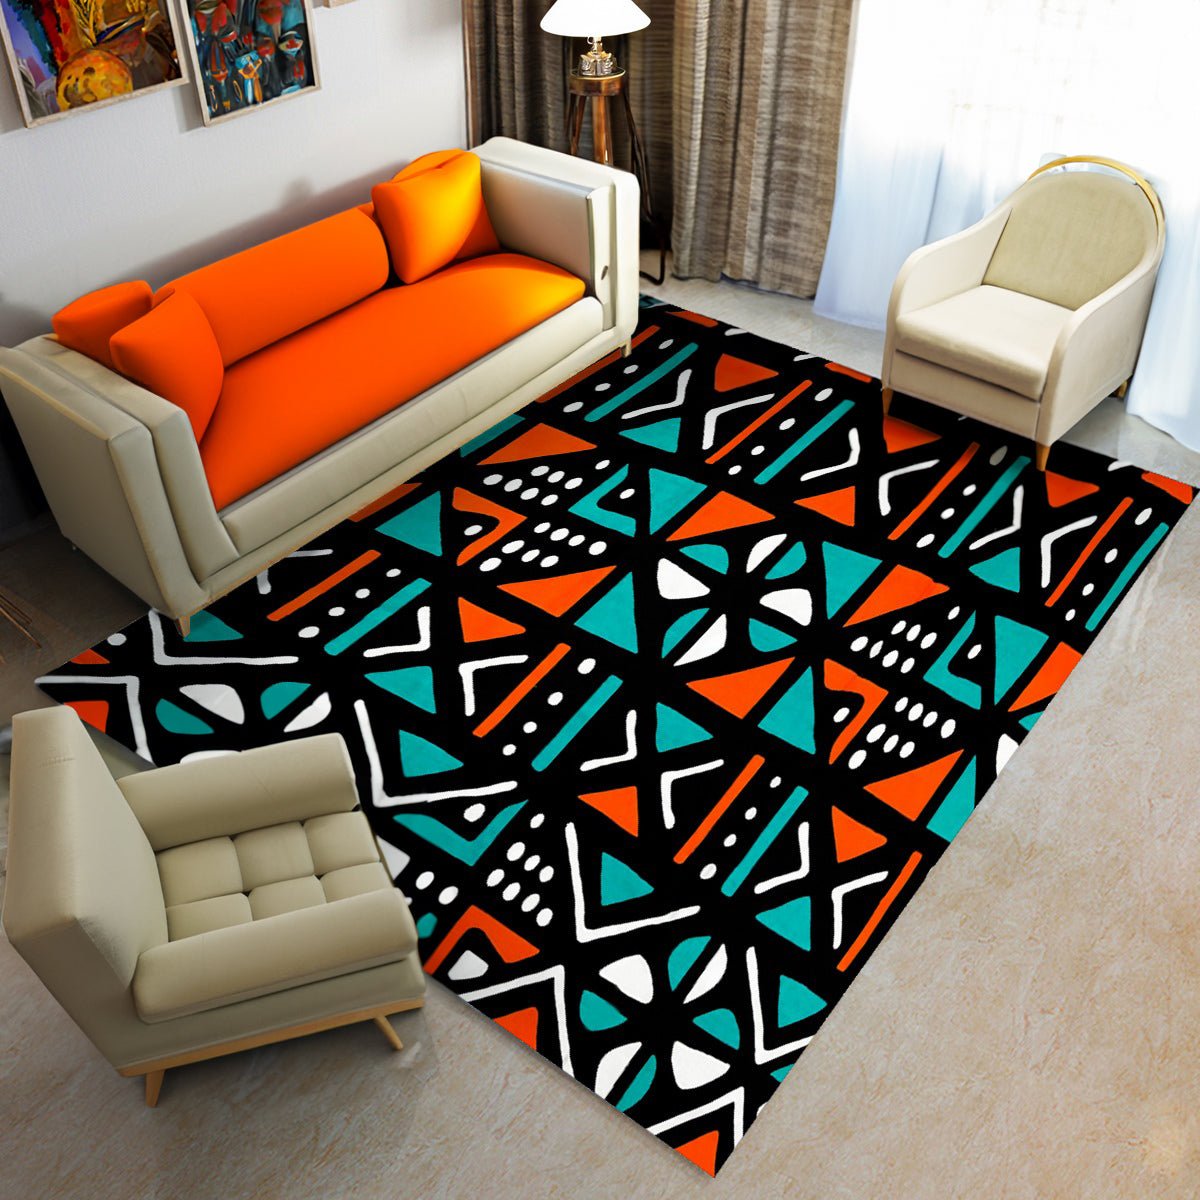 Mudcloth Area Rug - Elegant African Print Carpet Design